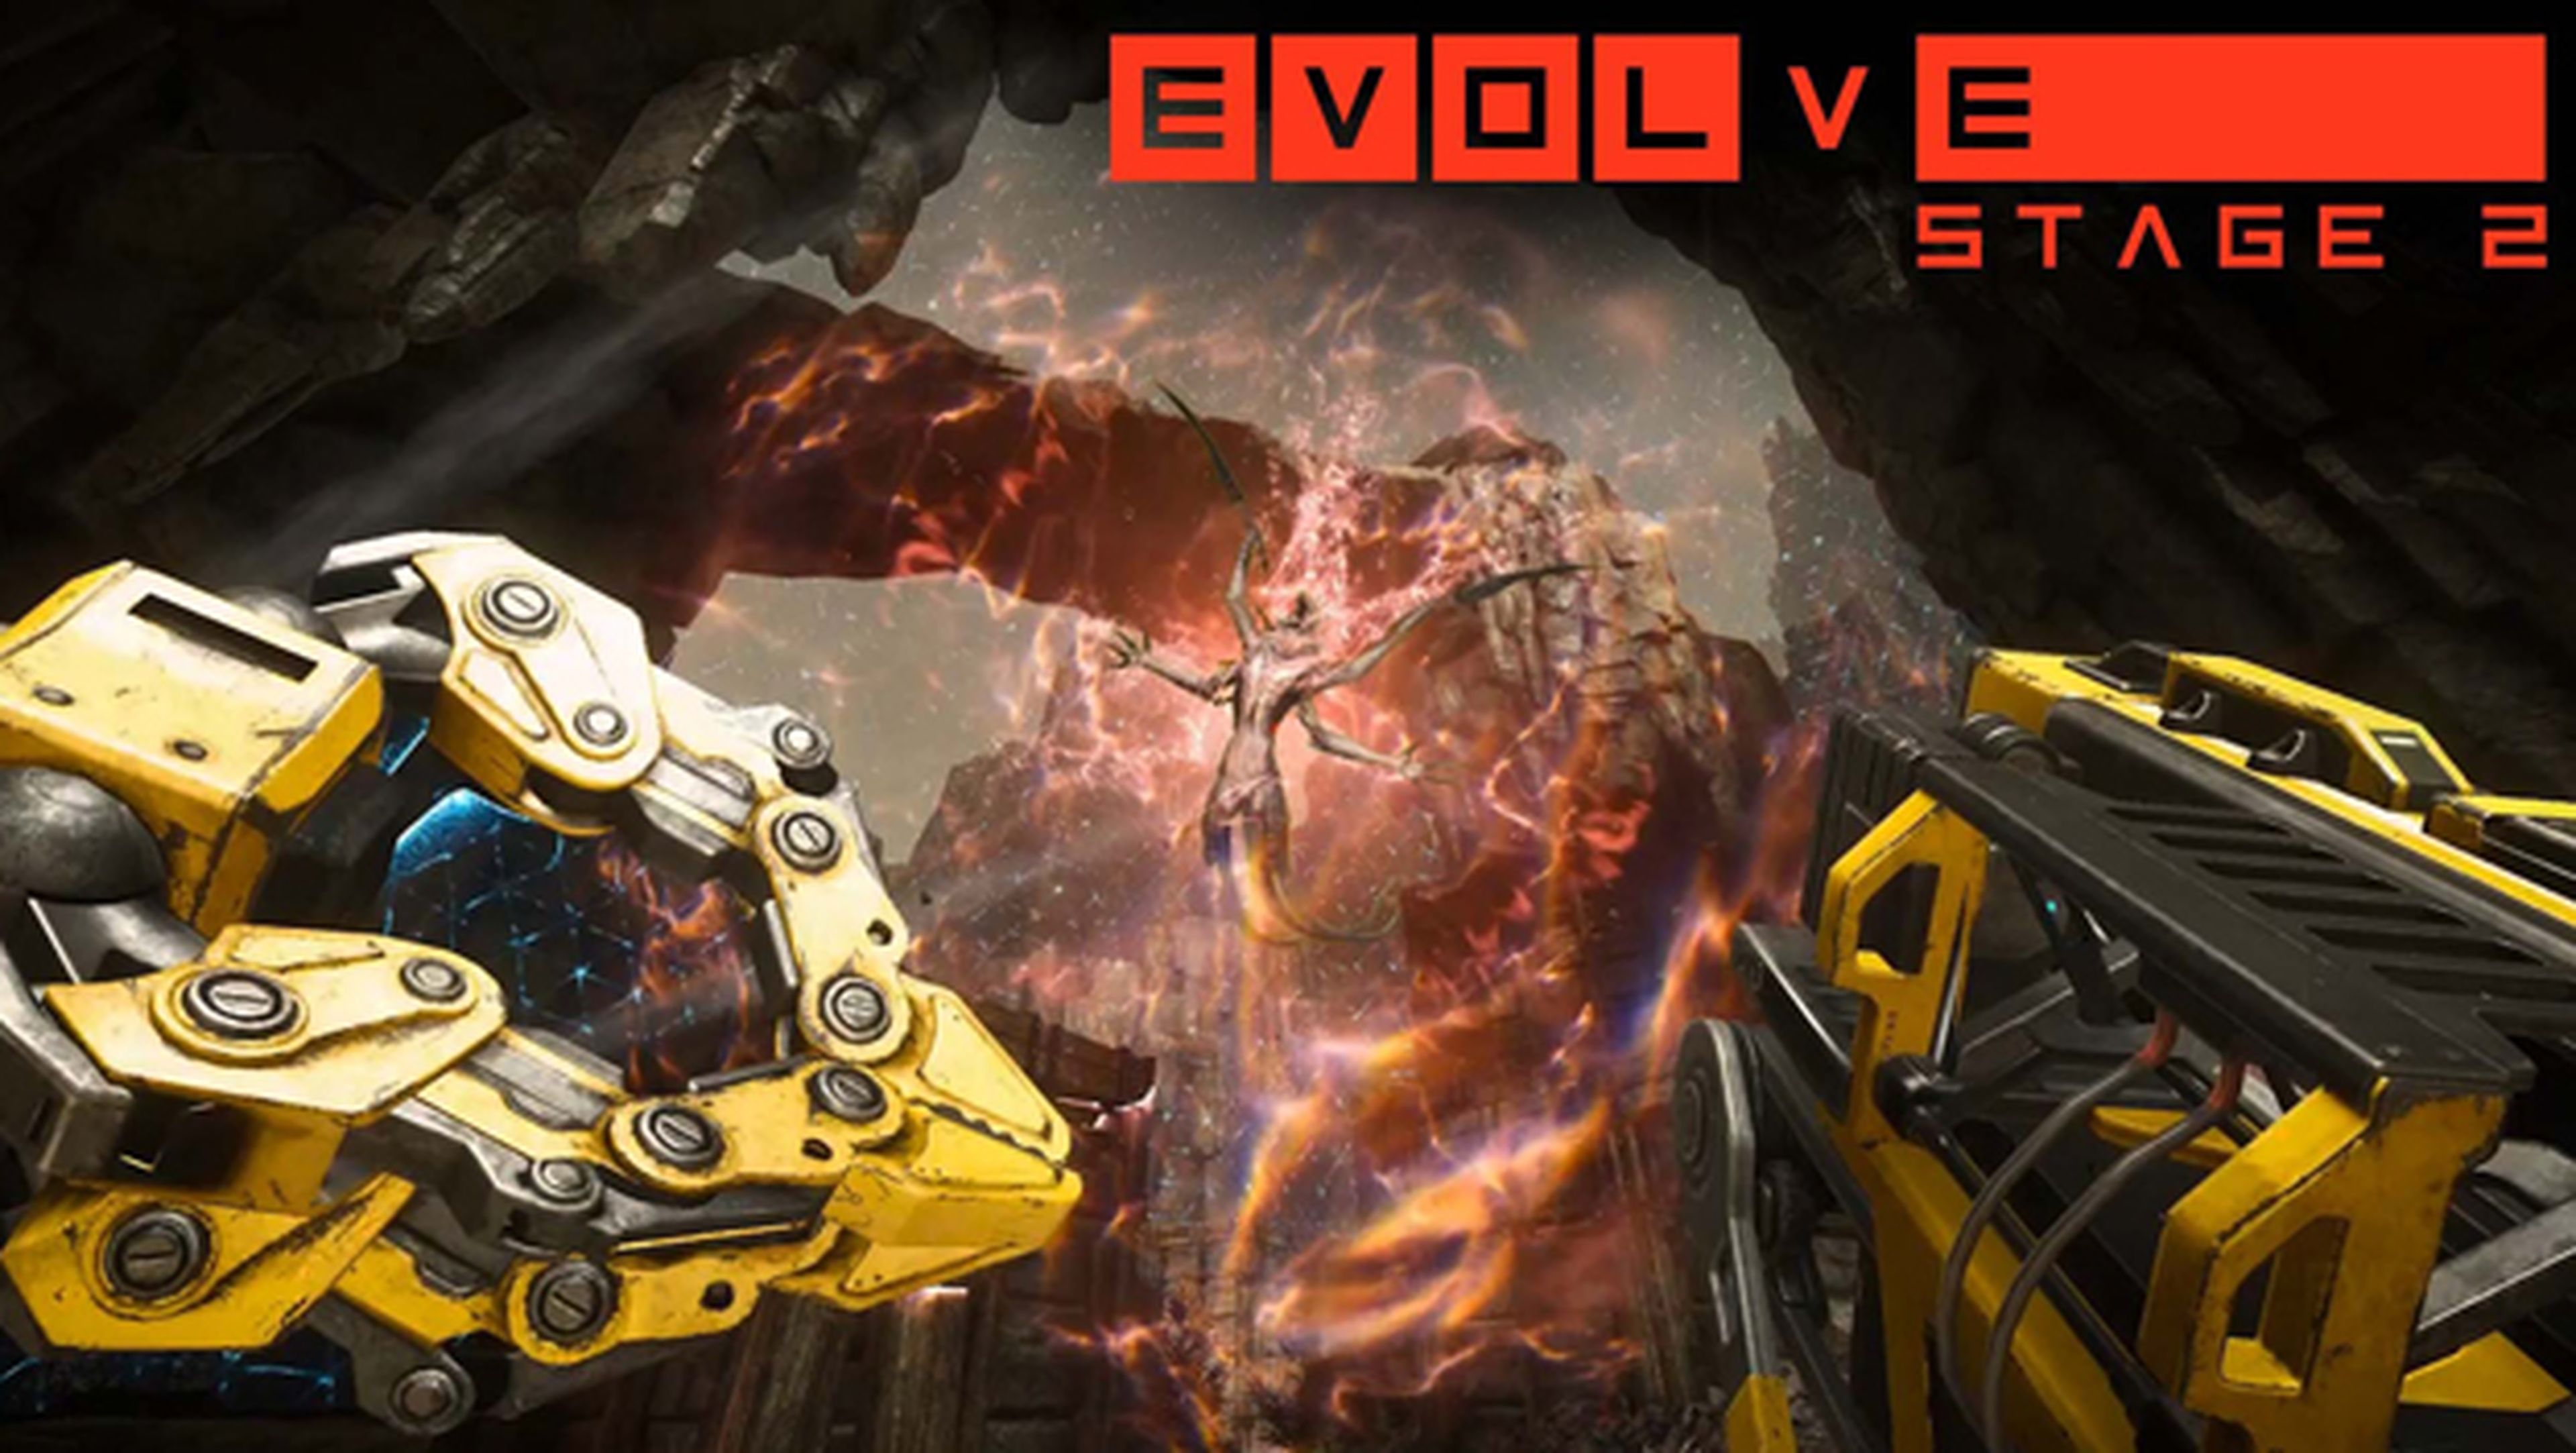 Evolve Stage 2 ya está disponible de forma gratuita en Steam